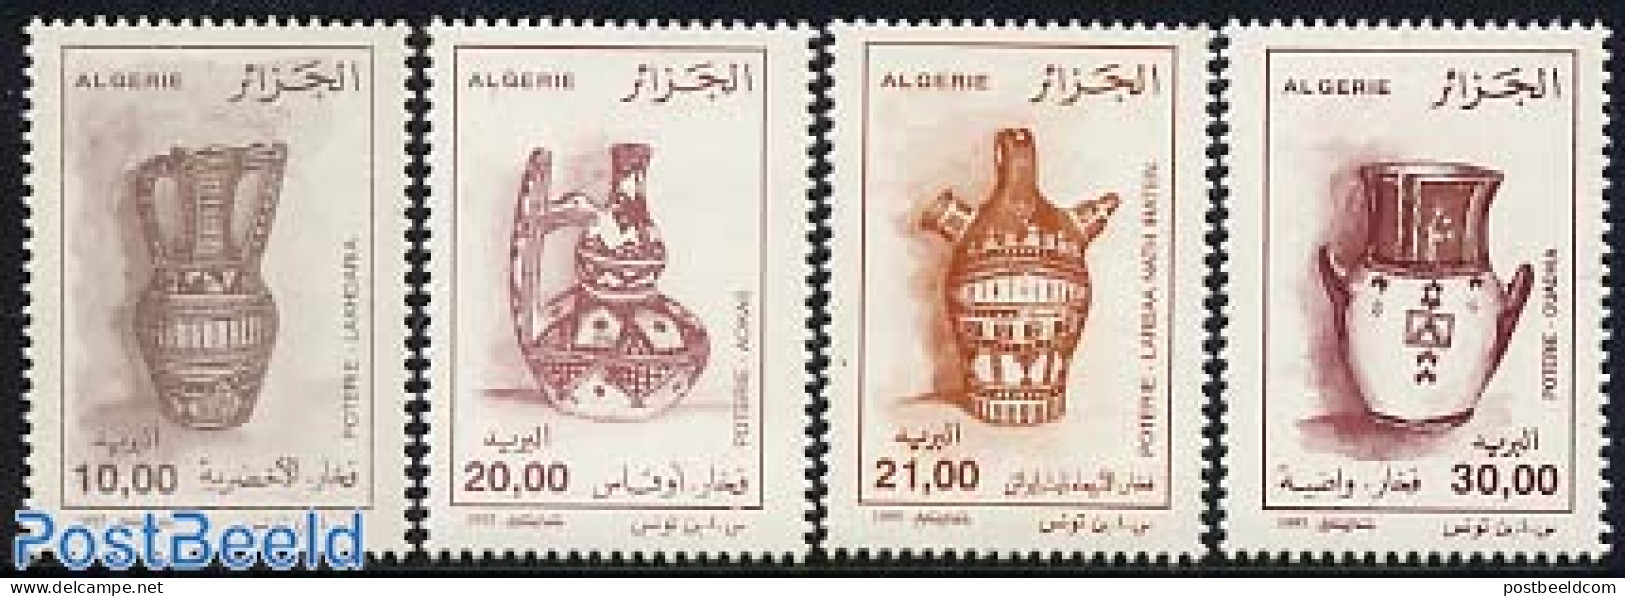 Algeria 1995 Pottery 4v, Mint NH, Art - Art & Antique Objects - Ceramics - Nuevos